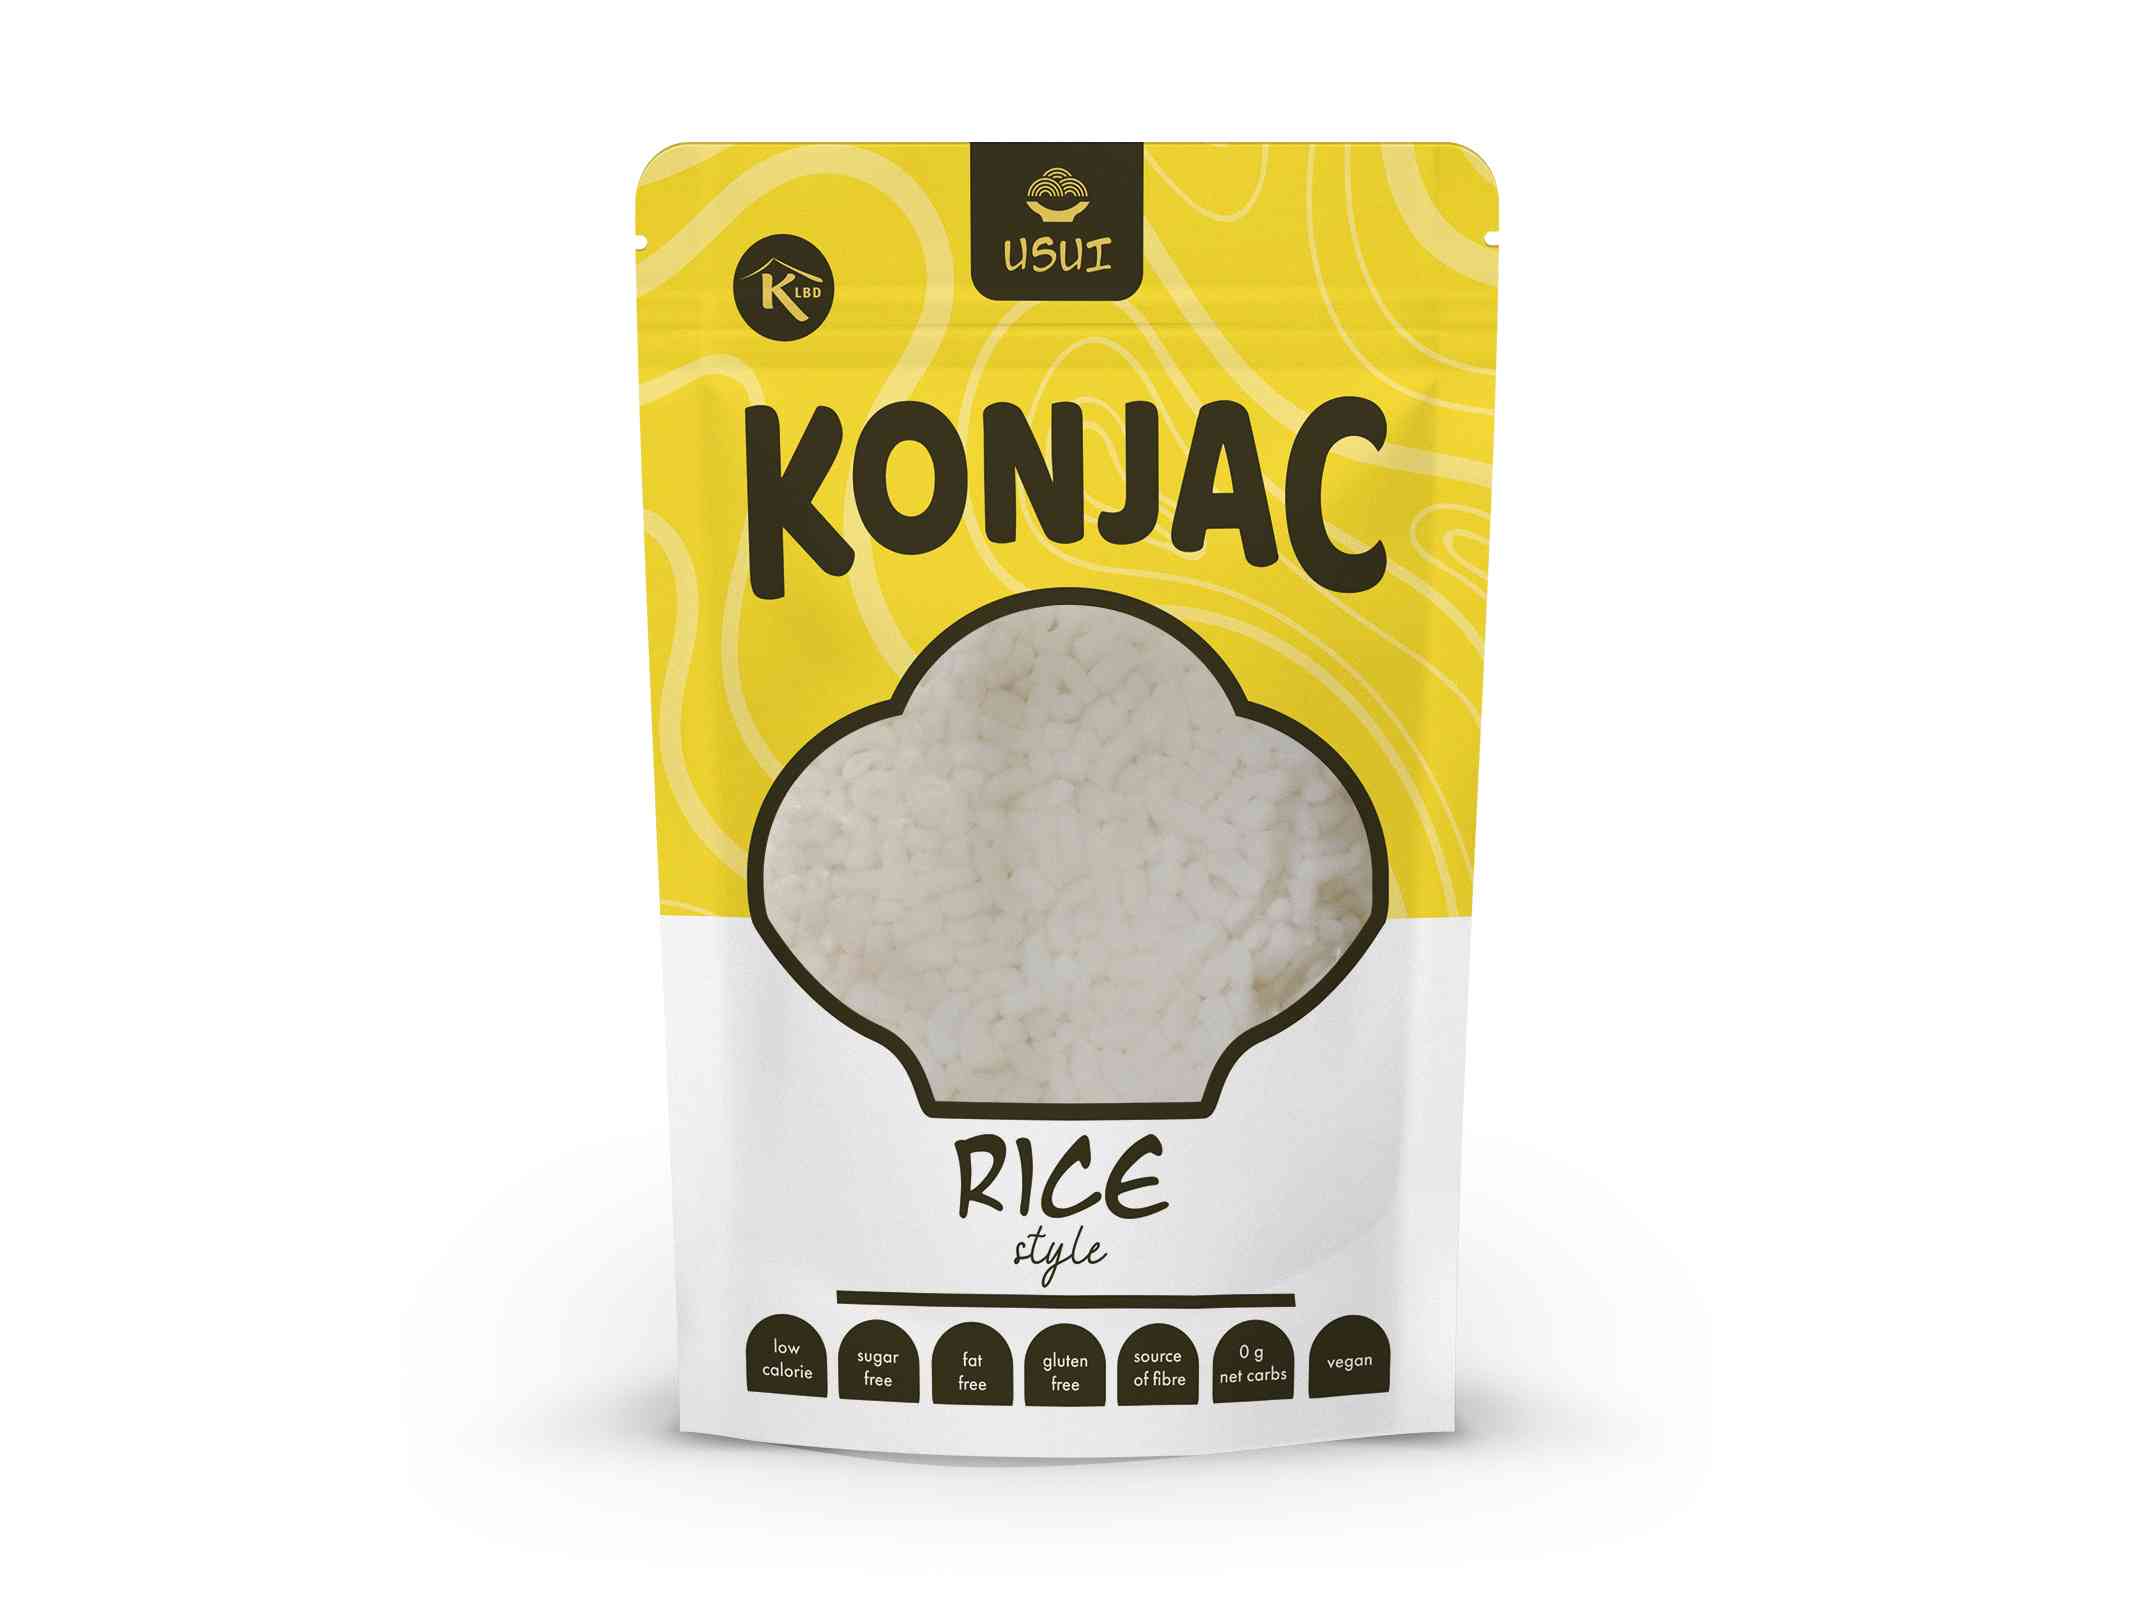 Usui konjaková ryža v náleve 270 g